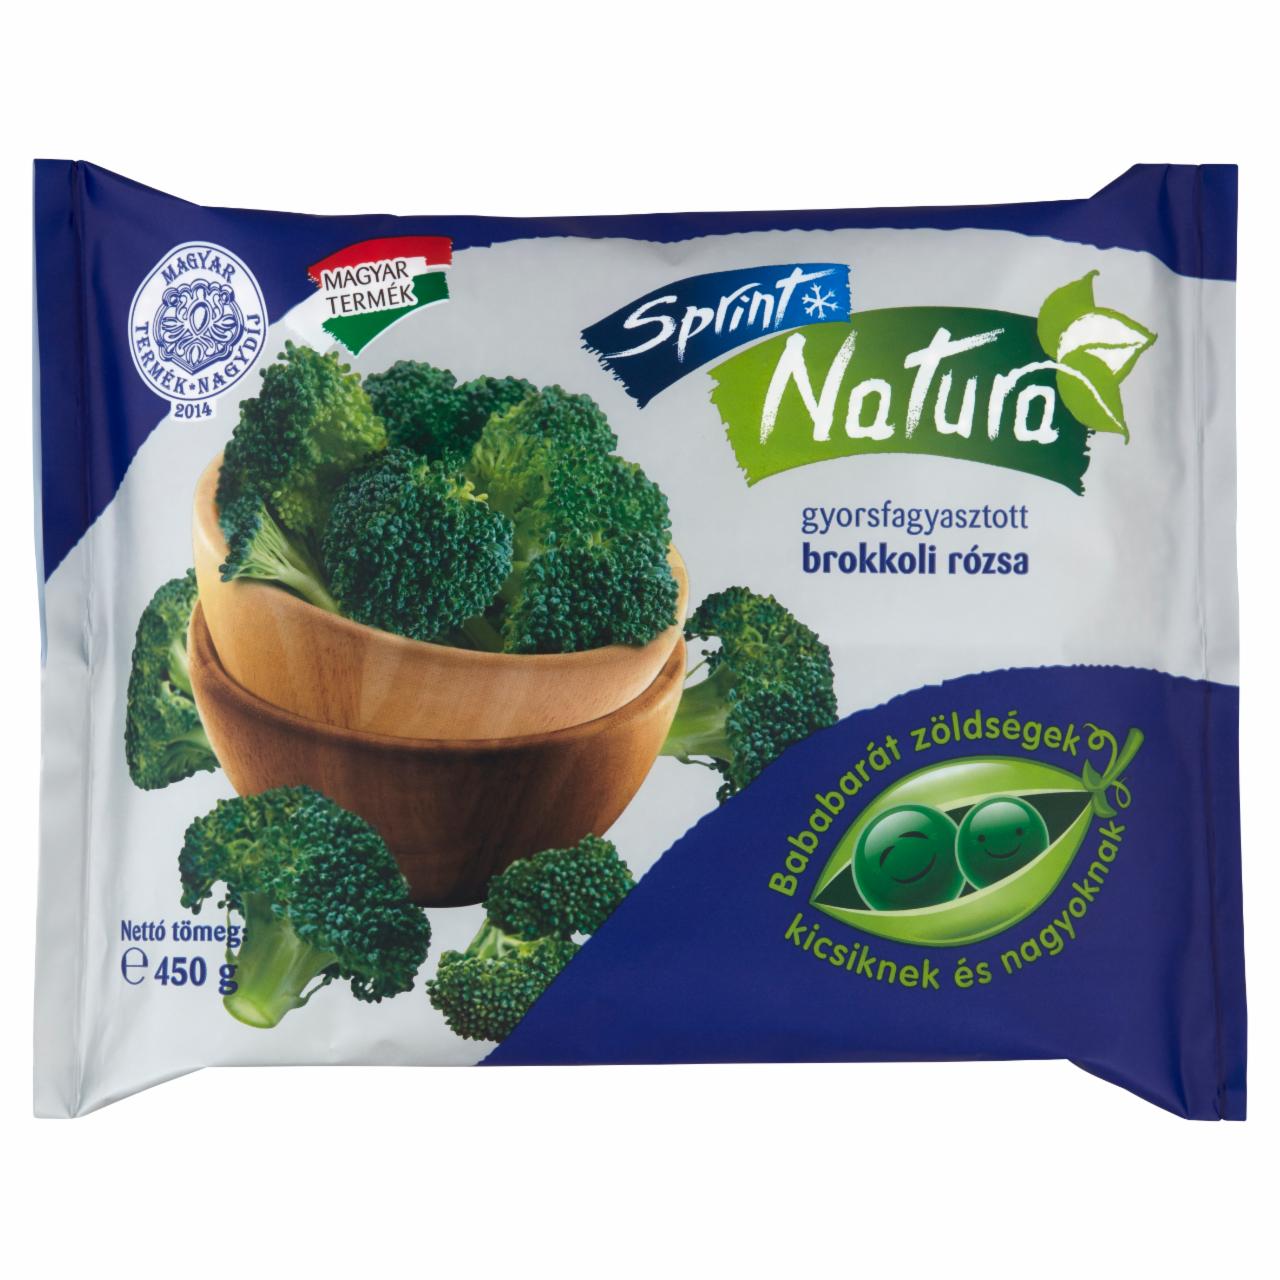 Képek - Sprint Natura gyorsfagyasztott brokkoli rózsa 450 g